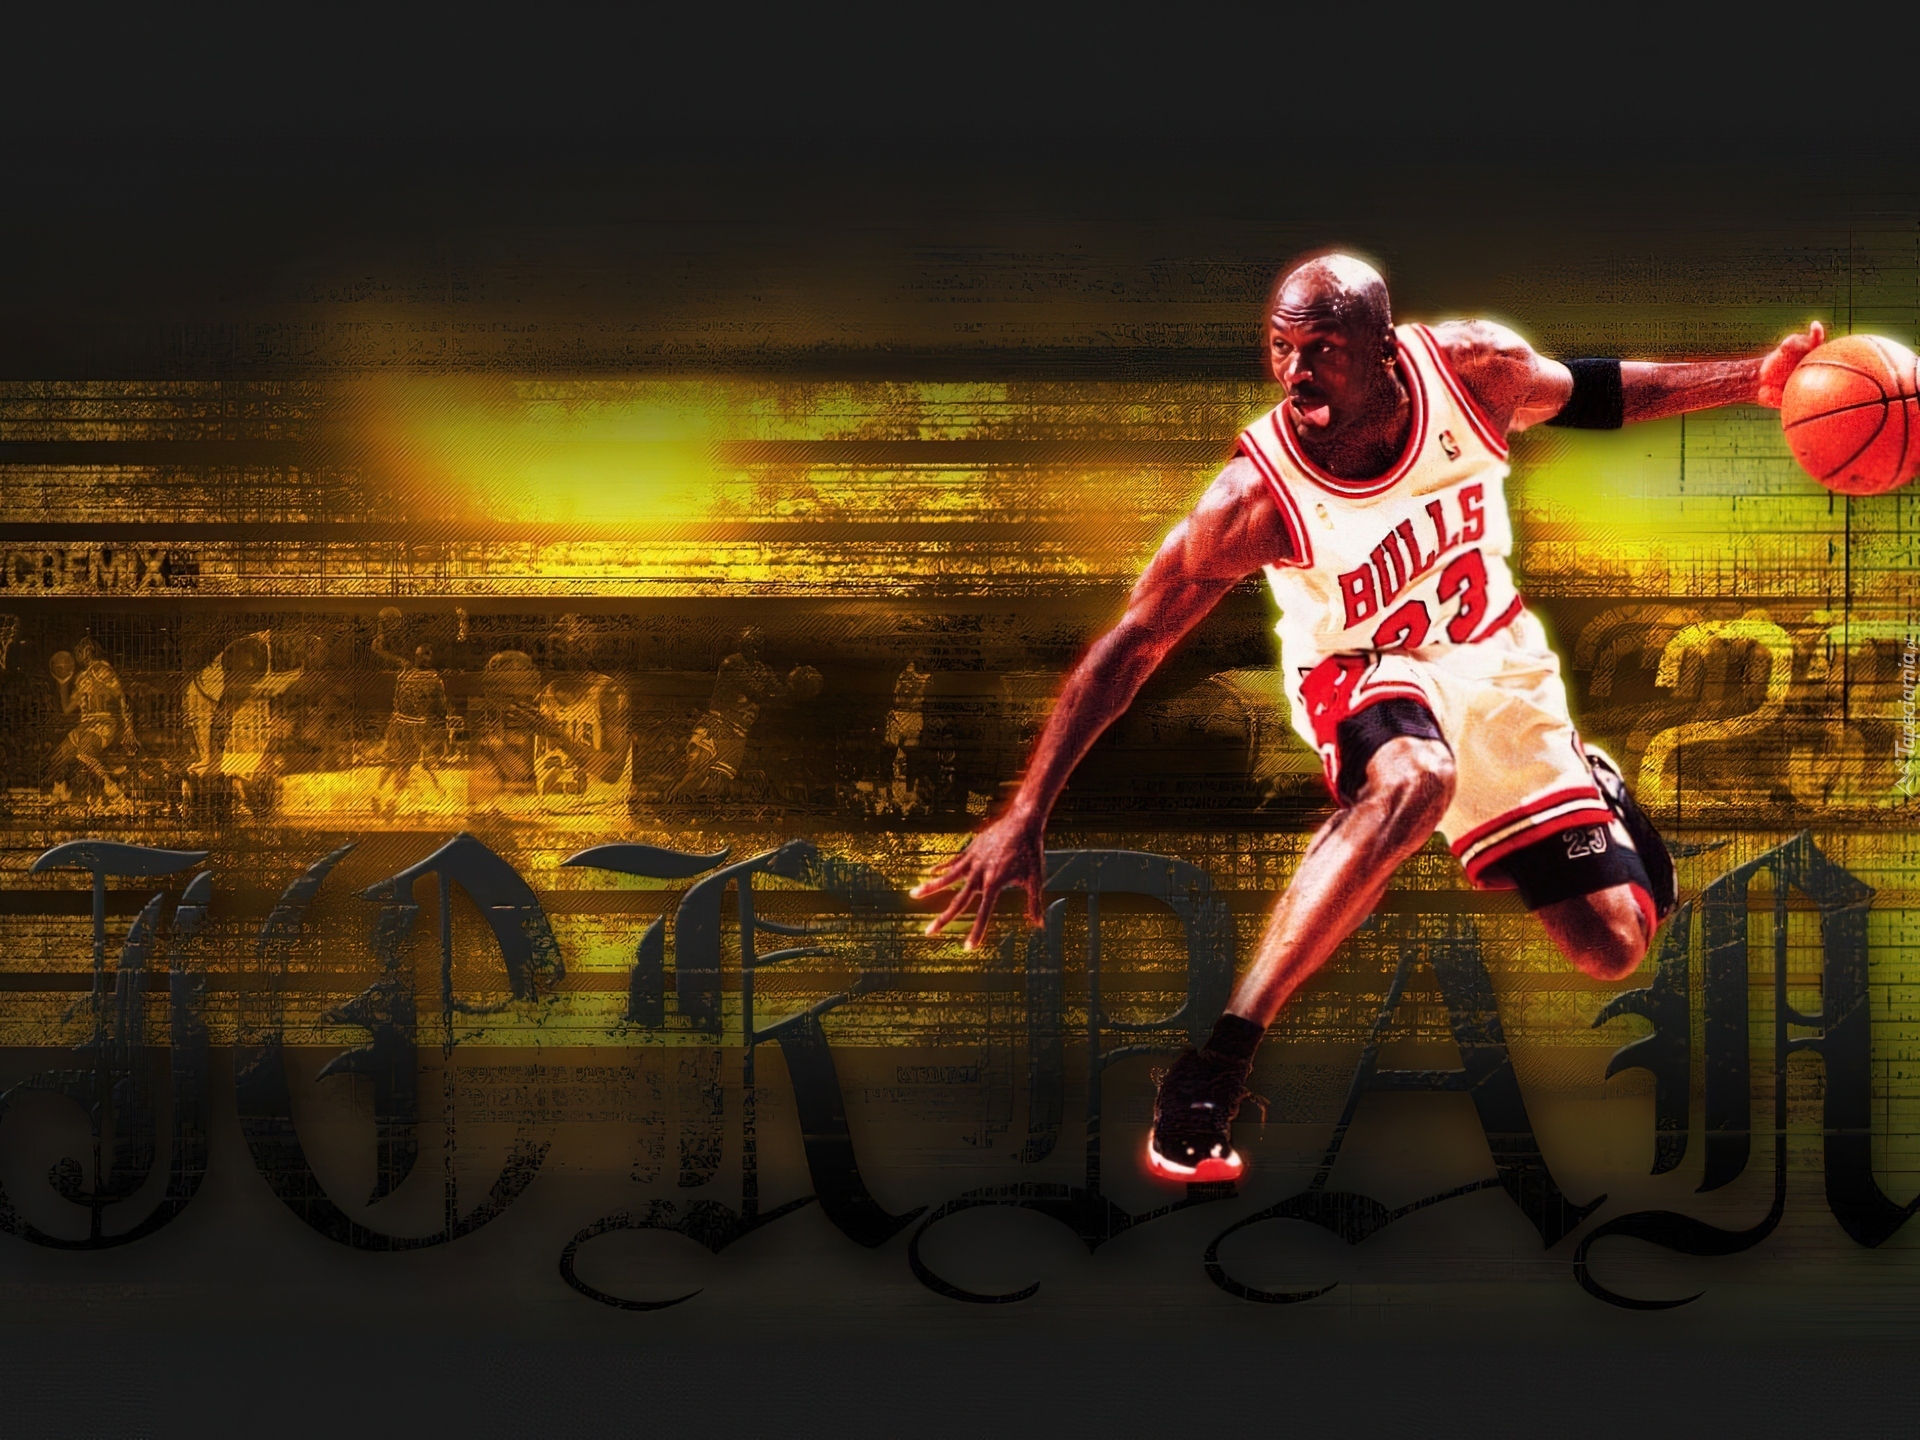 Koszykówka,koszykarz,Bulls, Michael Jordan